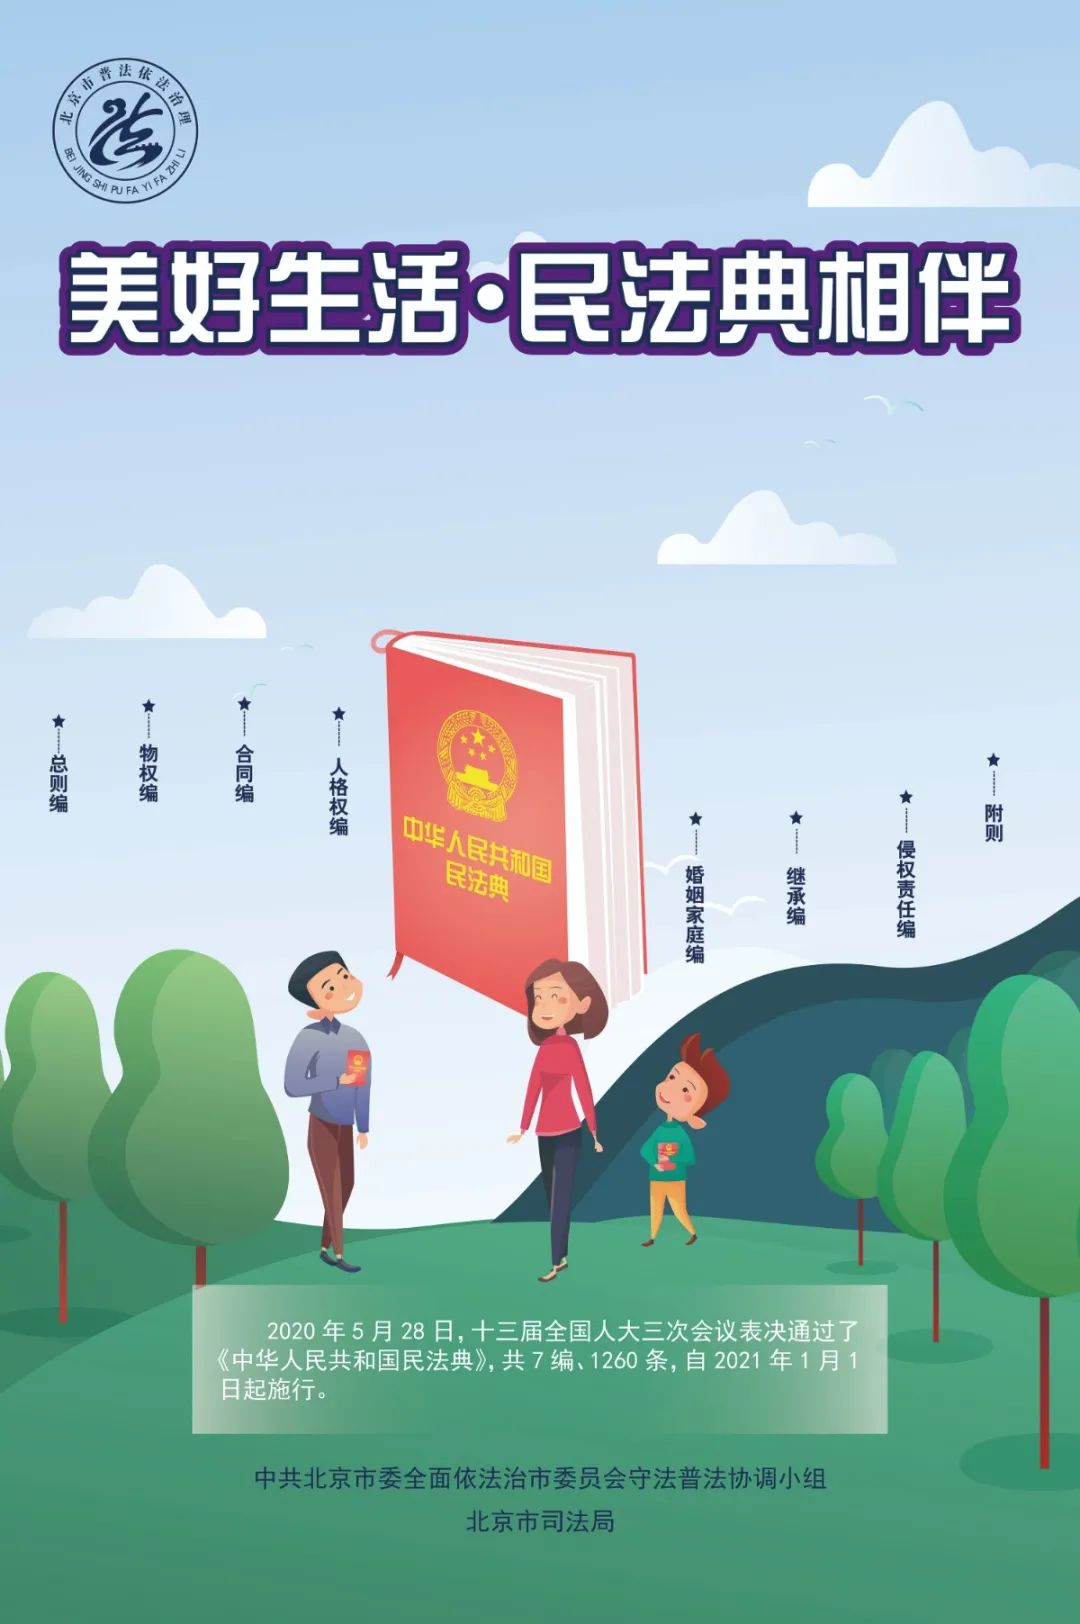 北京:民法典主题宣传活动十大举措和海报亮相